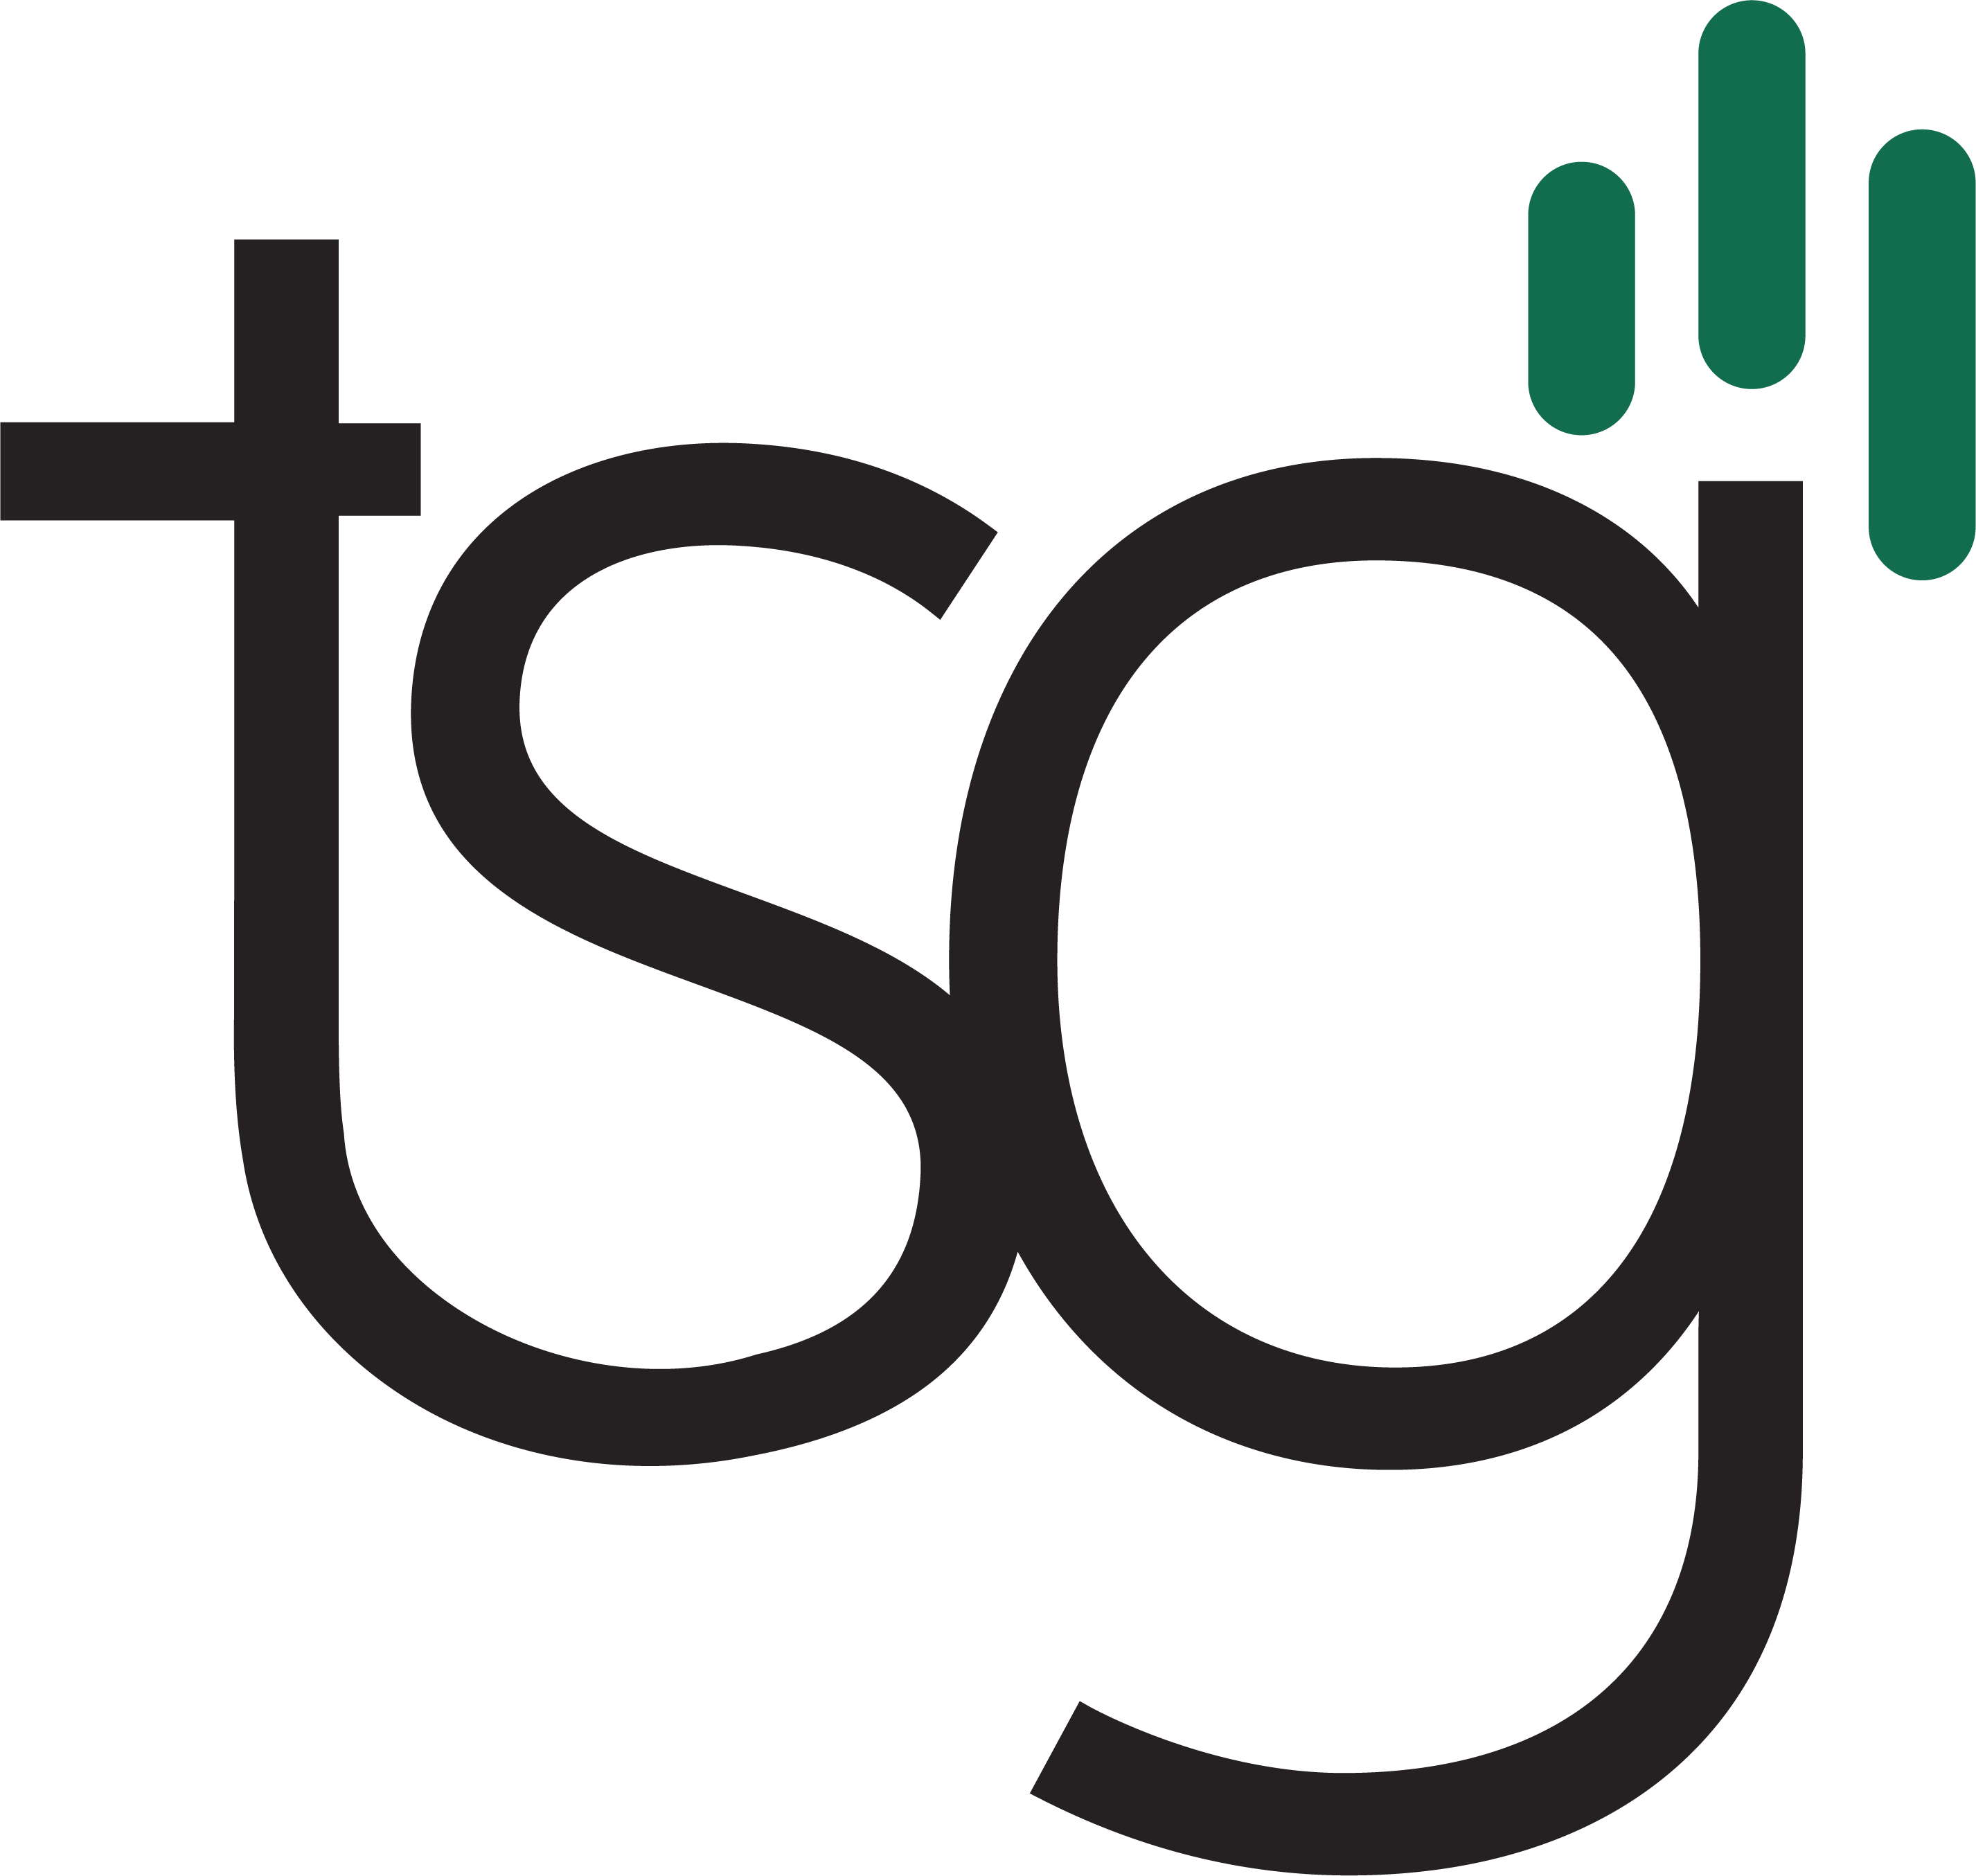 TSG Announces 2023 T